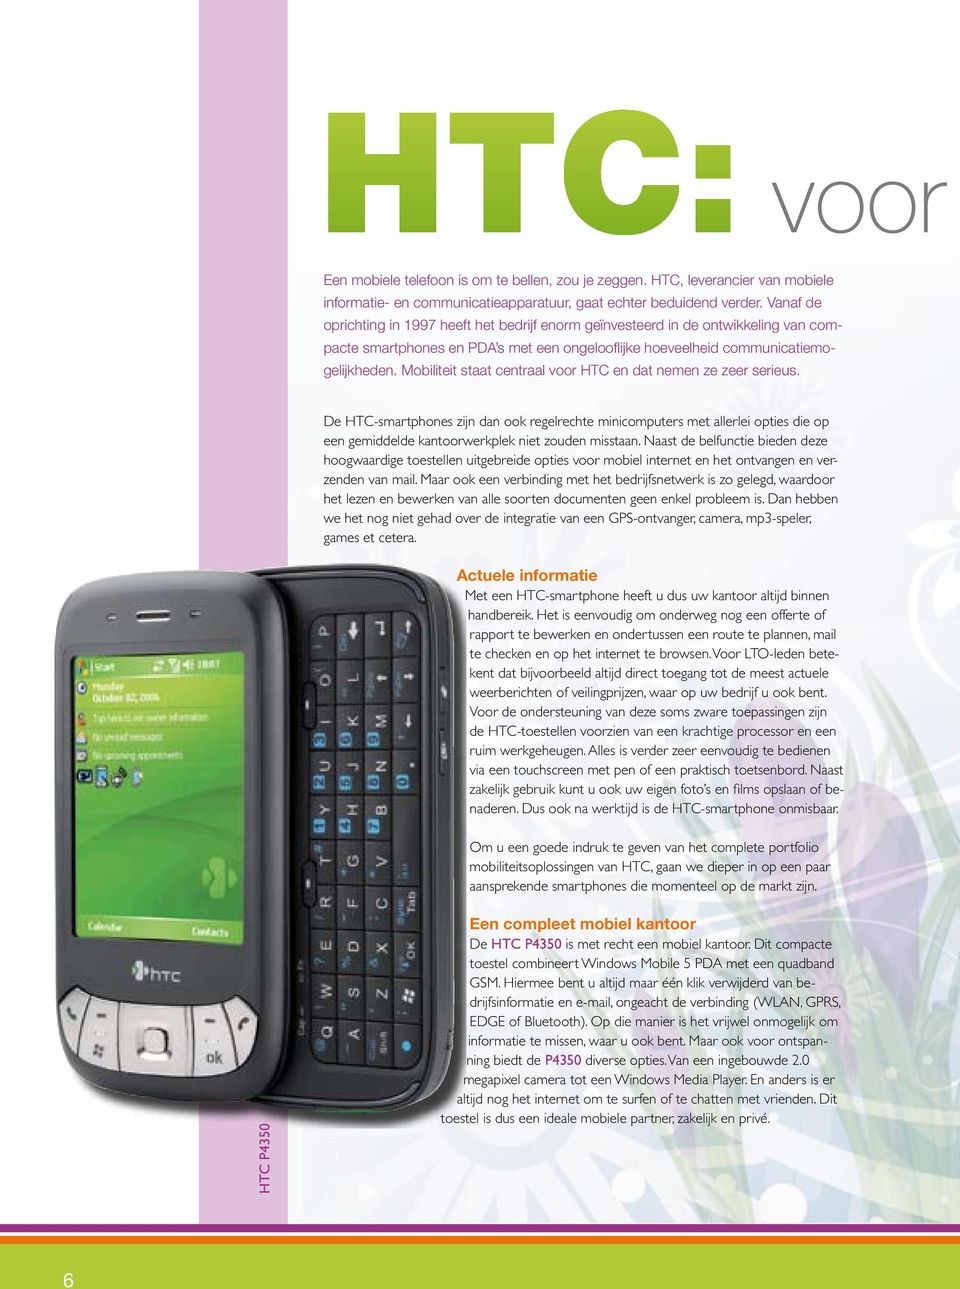 Mobiliteit staat centraal voor HTC en dat nemen ze zeer serieus.